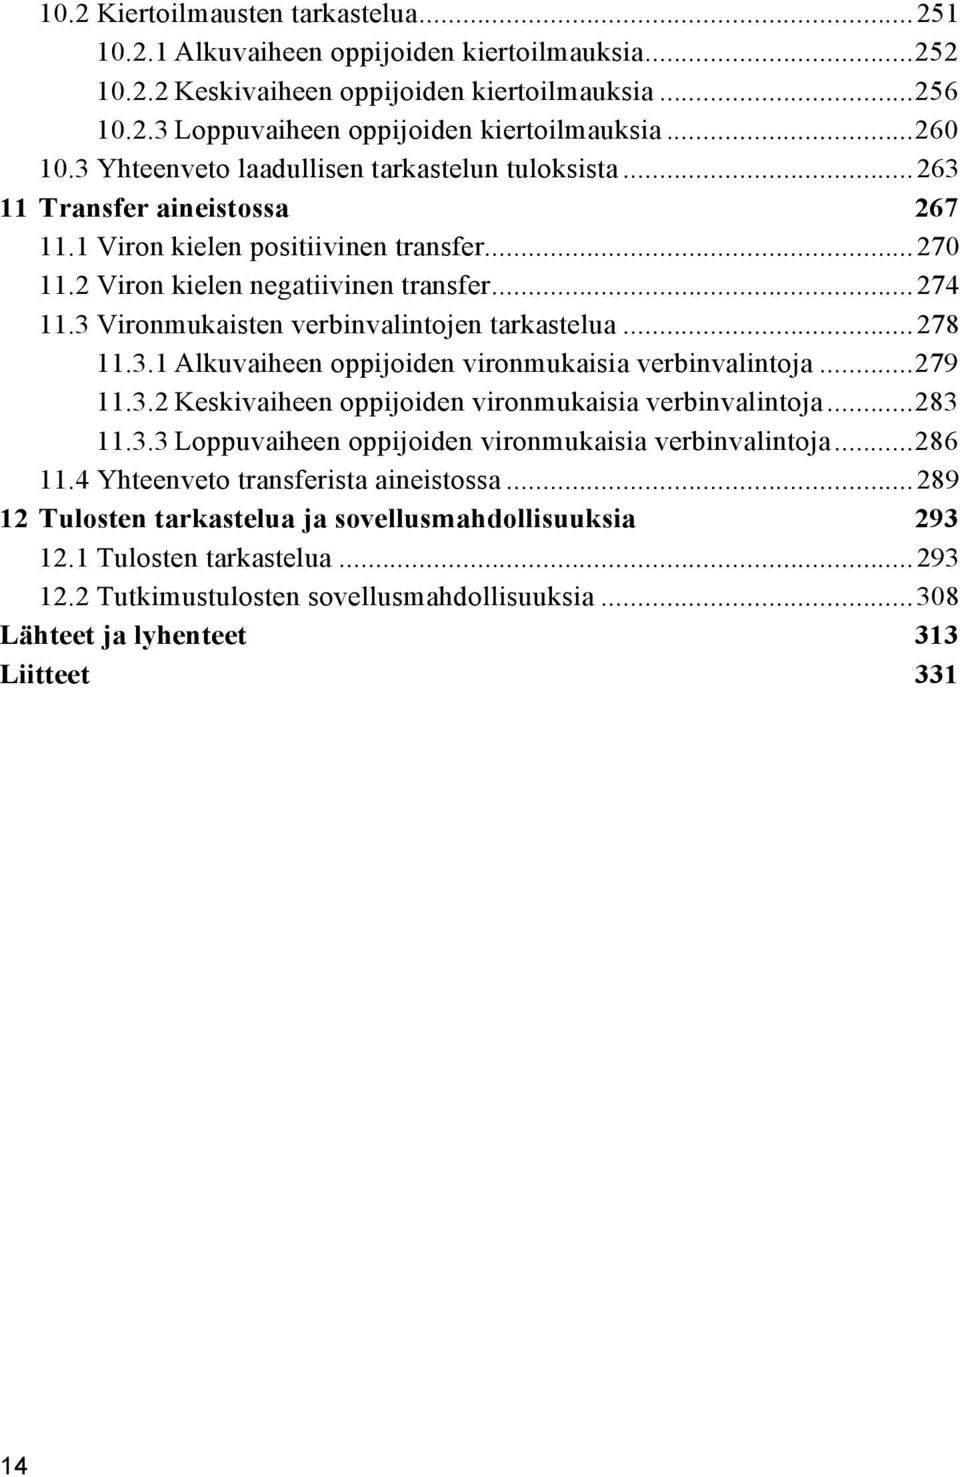 3 Vironmukaisten verbinvalintojen tarkastelua...278 11.3.1 Alkuvaiheen oppijoiden vironmukaisia verbinvalintoja...279 11.3.2 Keskivaiheen oppijoiden vironmukaisia verbinvalintoja...283 11.3.3 Loppuvaiheen oppijoiden vironmukaisia verbinvalintoja.